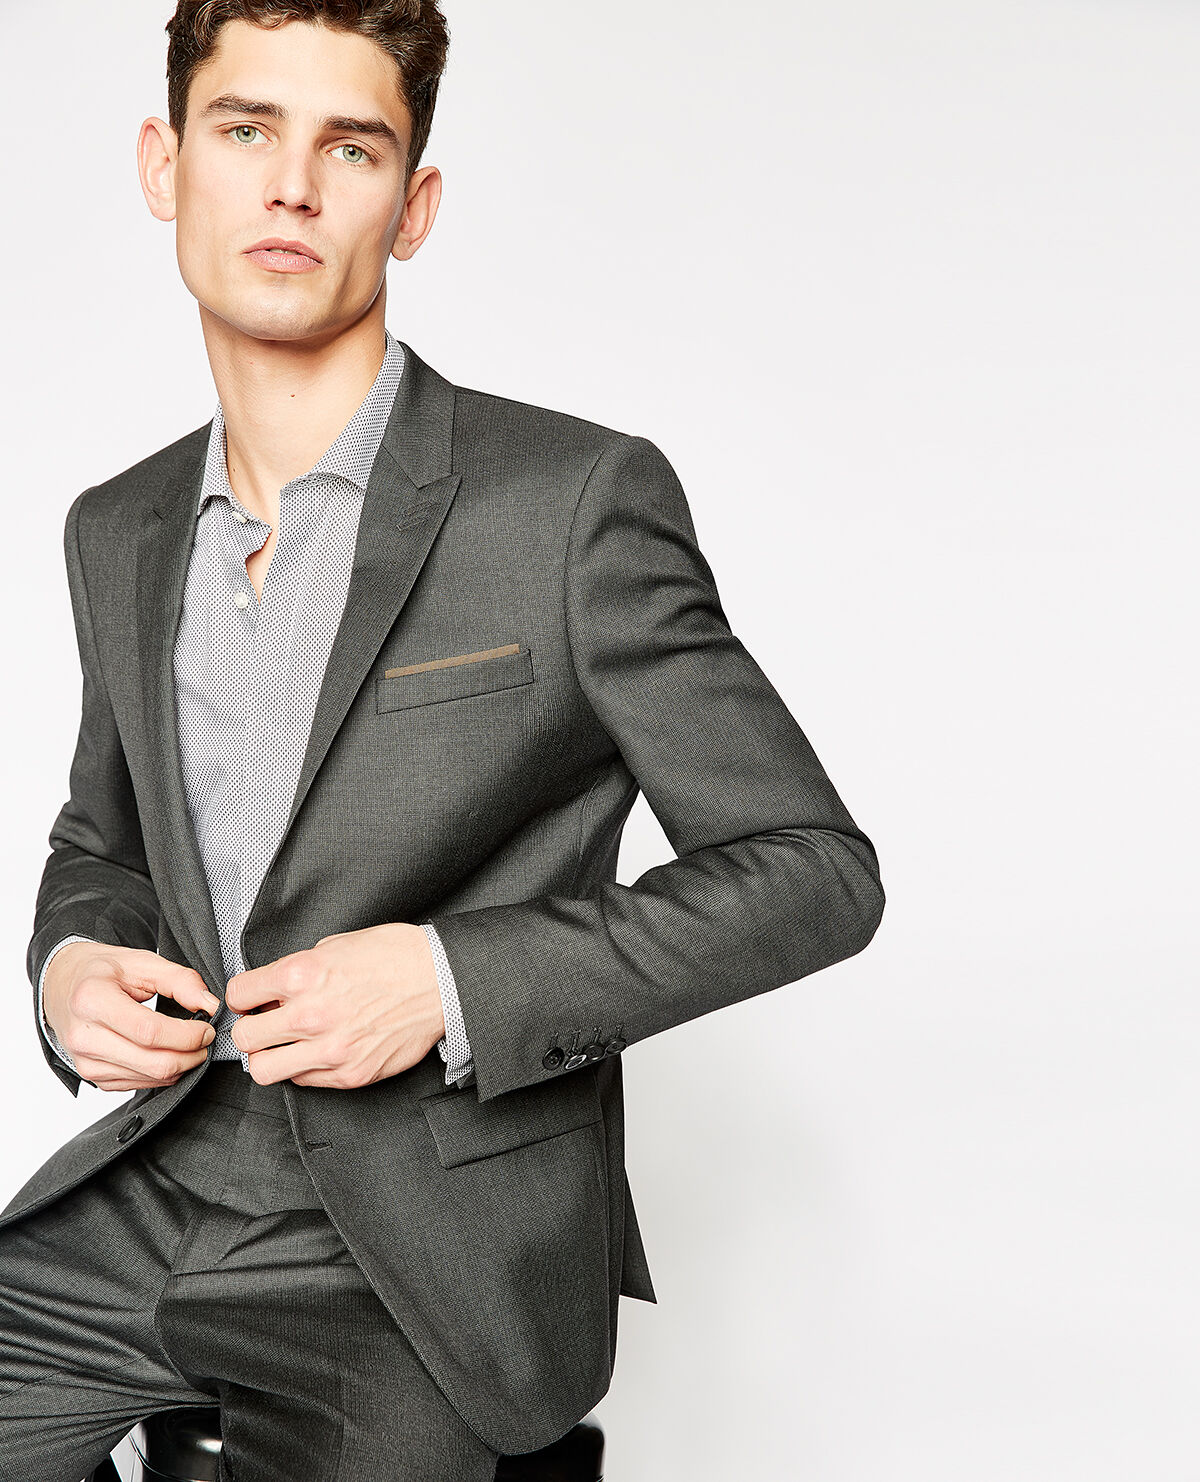 Men's Blazer Slim Fit Business Suit Jacket 6 Colors | Fruugo US